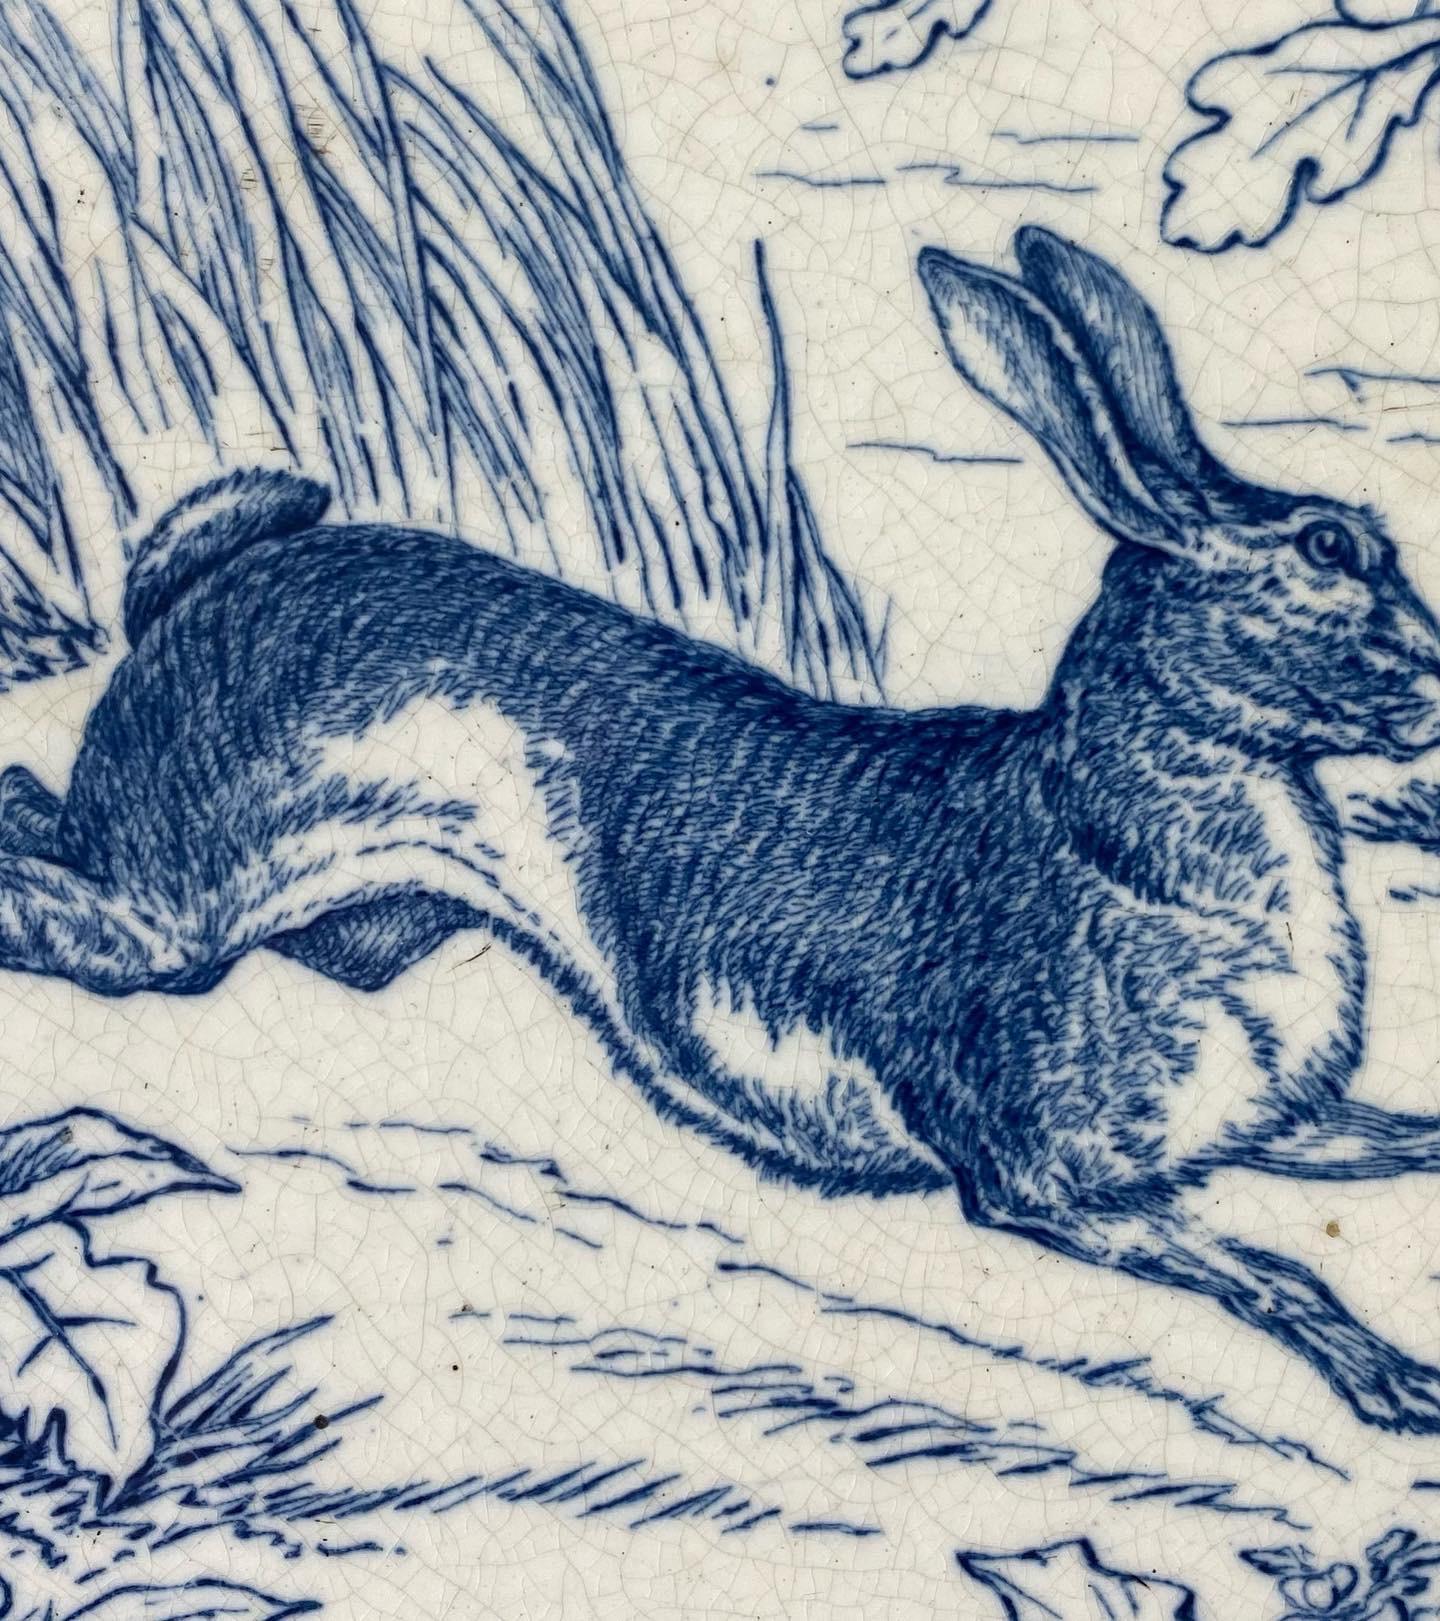 Fired Wedgwood Pottery Tile. ‘Hare’, Framed, C. 1875